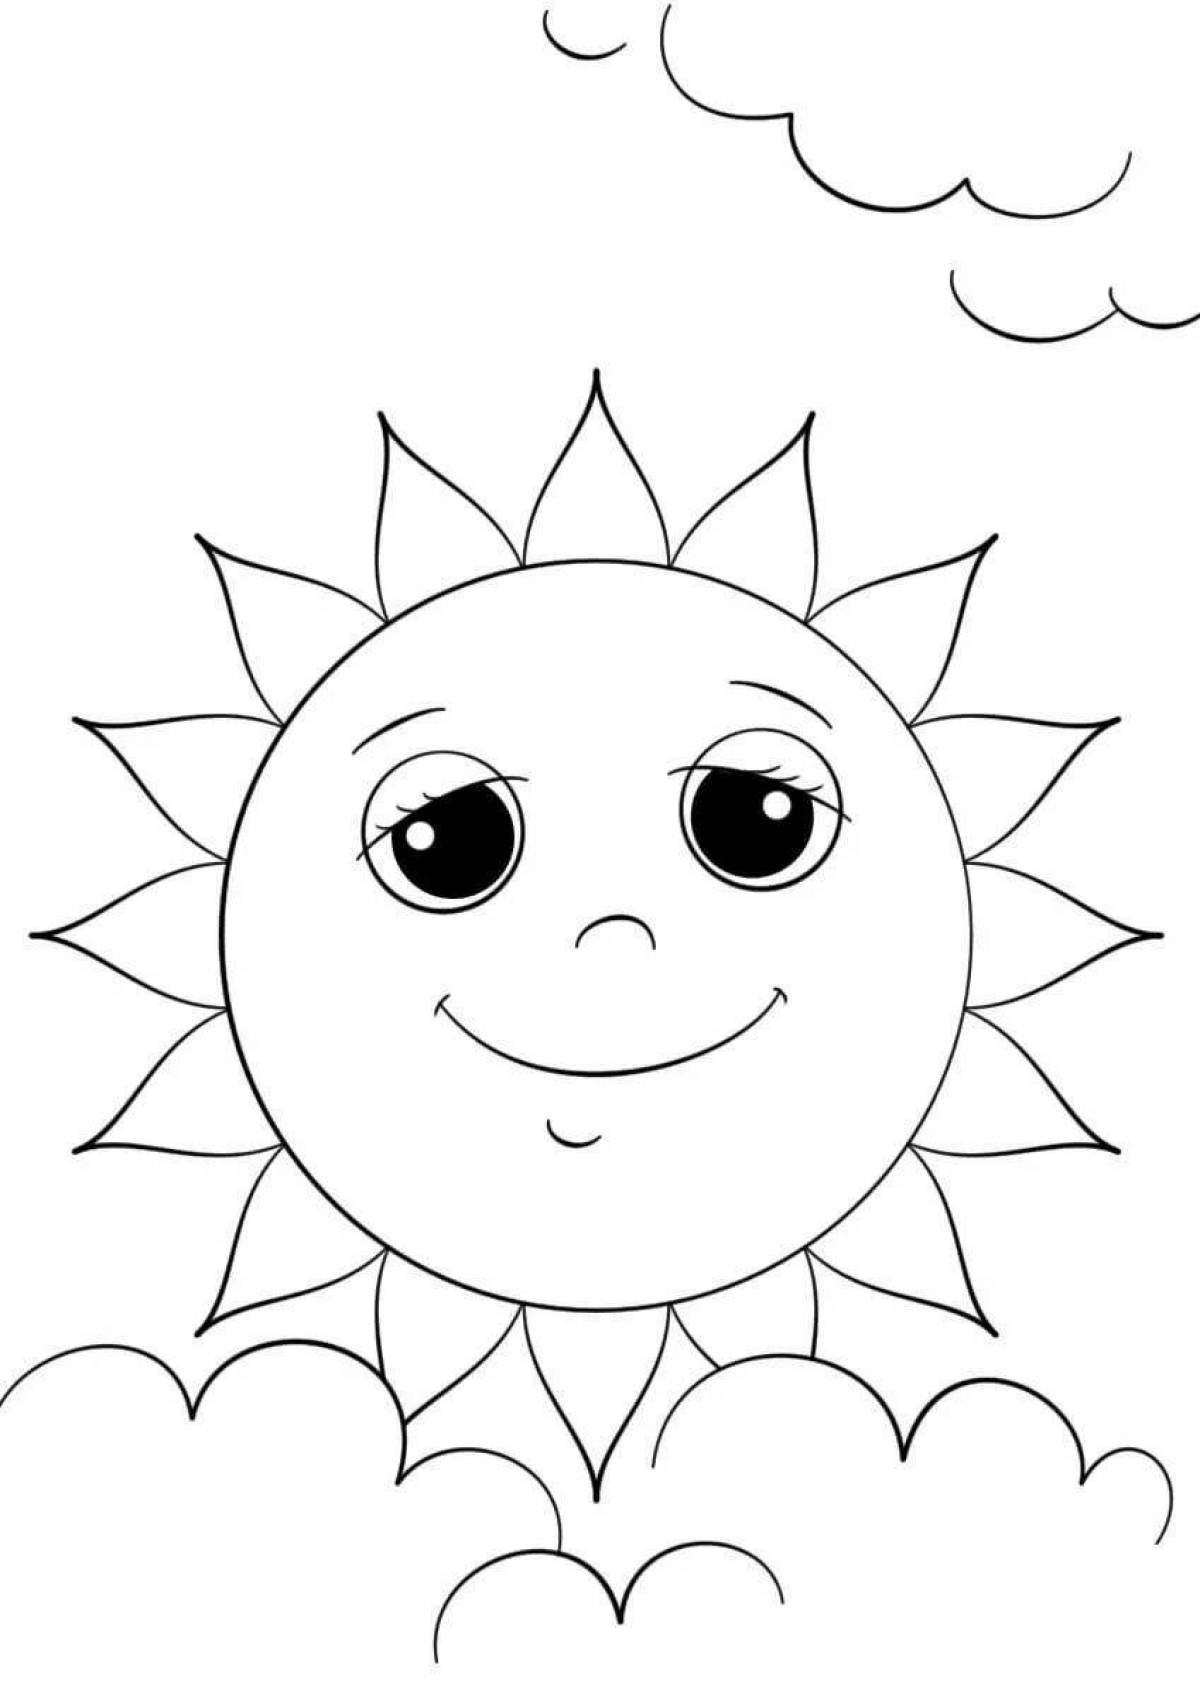 Мирная раскраска солнечная картинка для детей